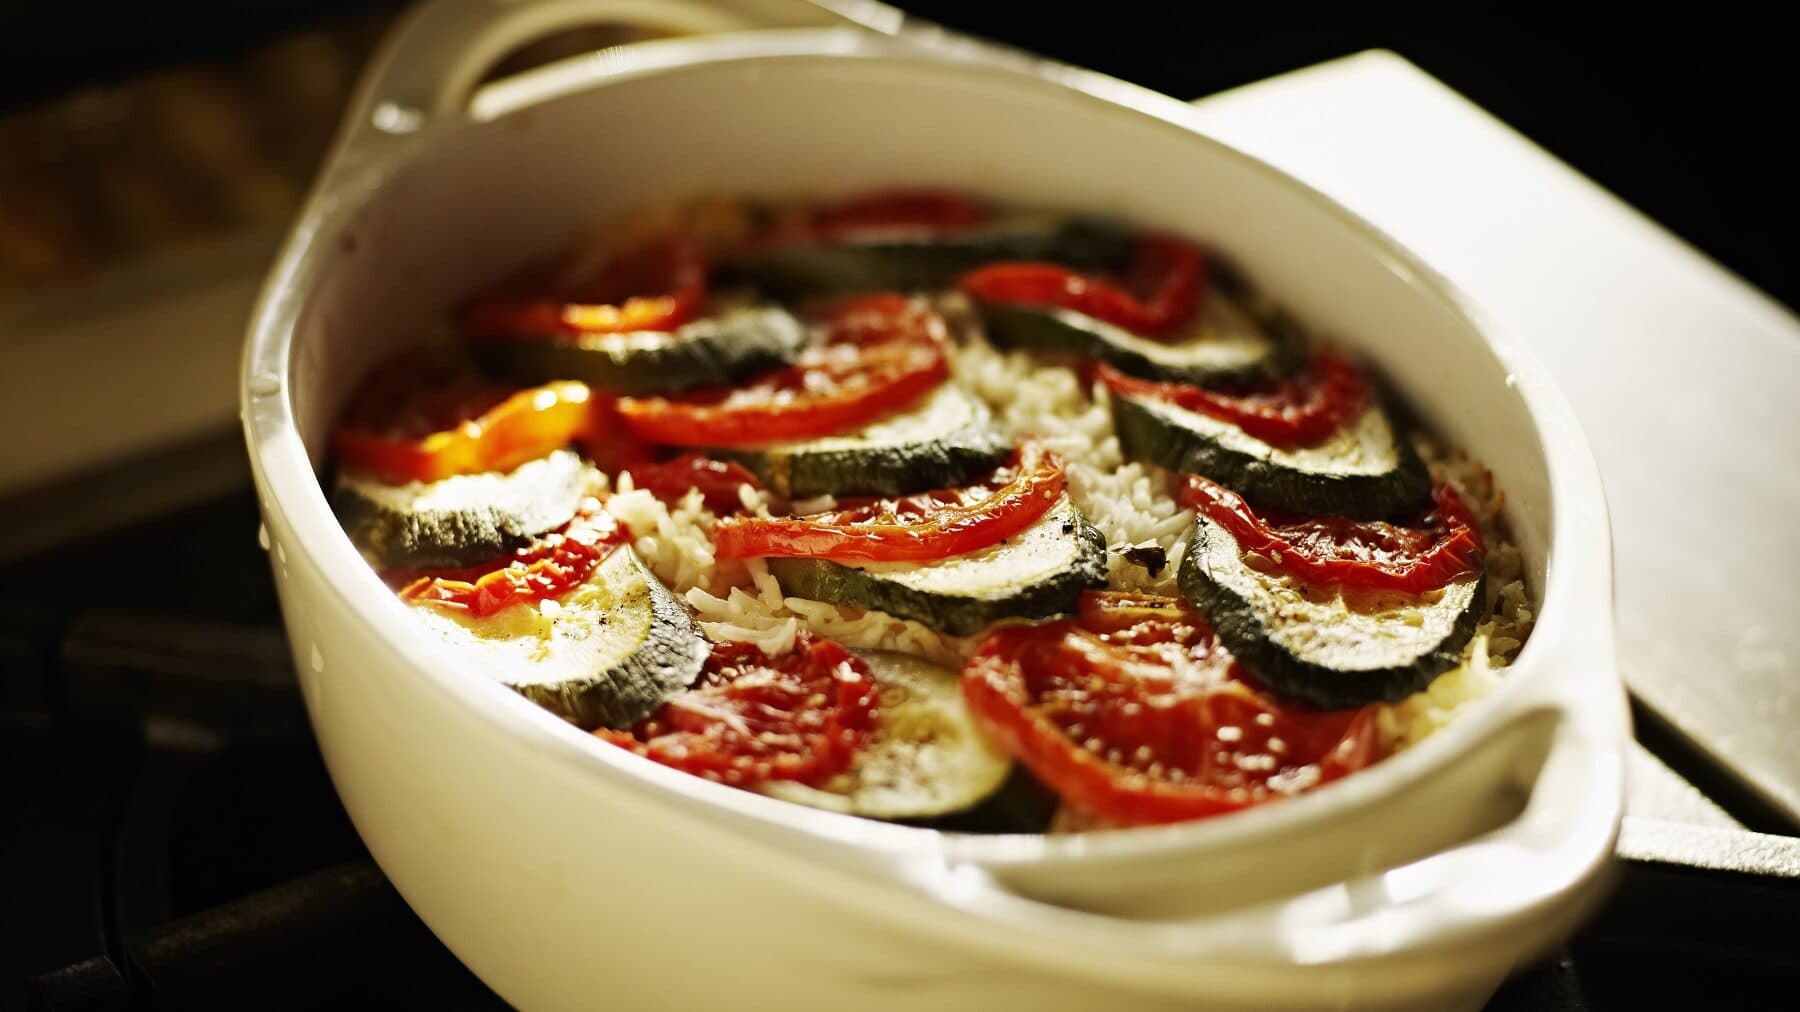 Zucchini Auflauf mit Tomate in einer hellen Auflaufform mit Parmesan überbacken auf einem dunklen Tisch mit Sonne von hinten